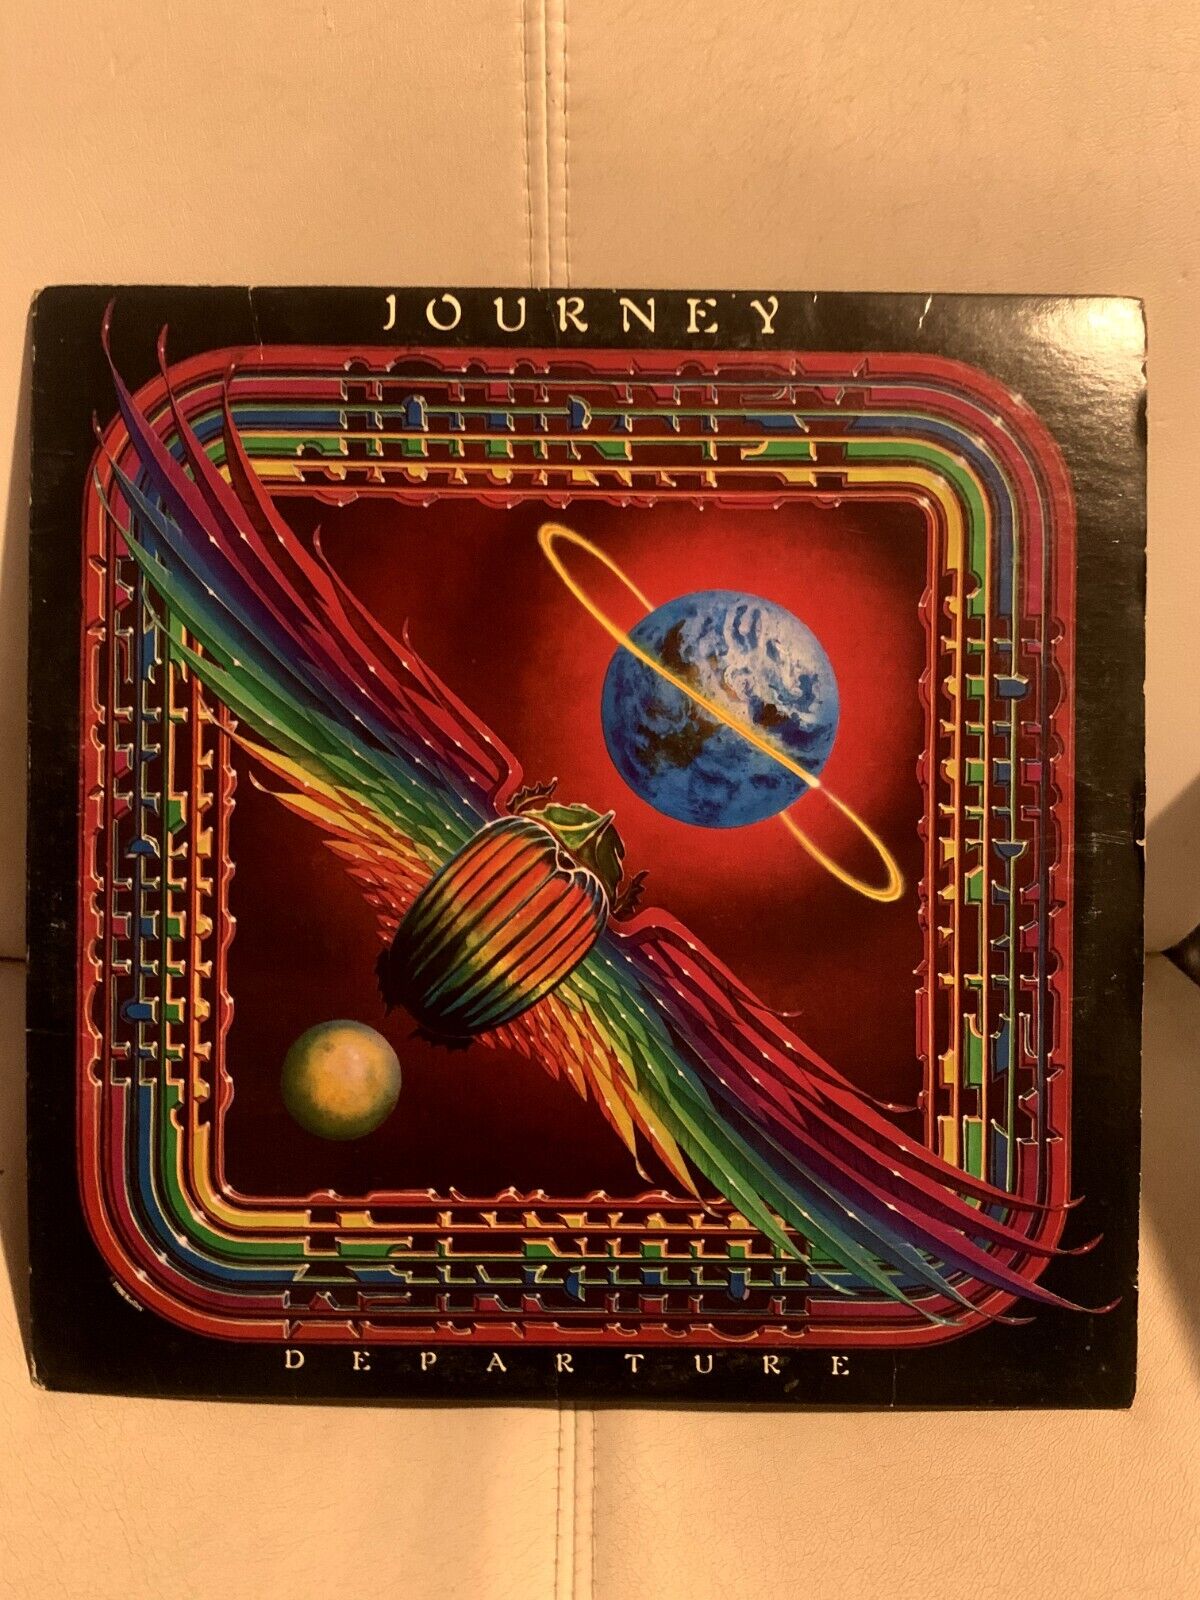 Journey - Departure 1980 Vinyl